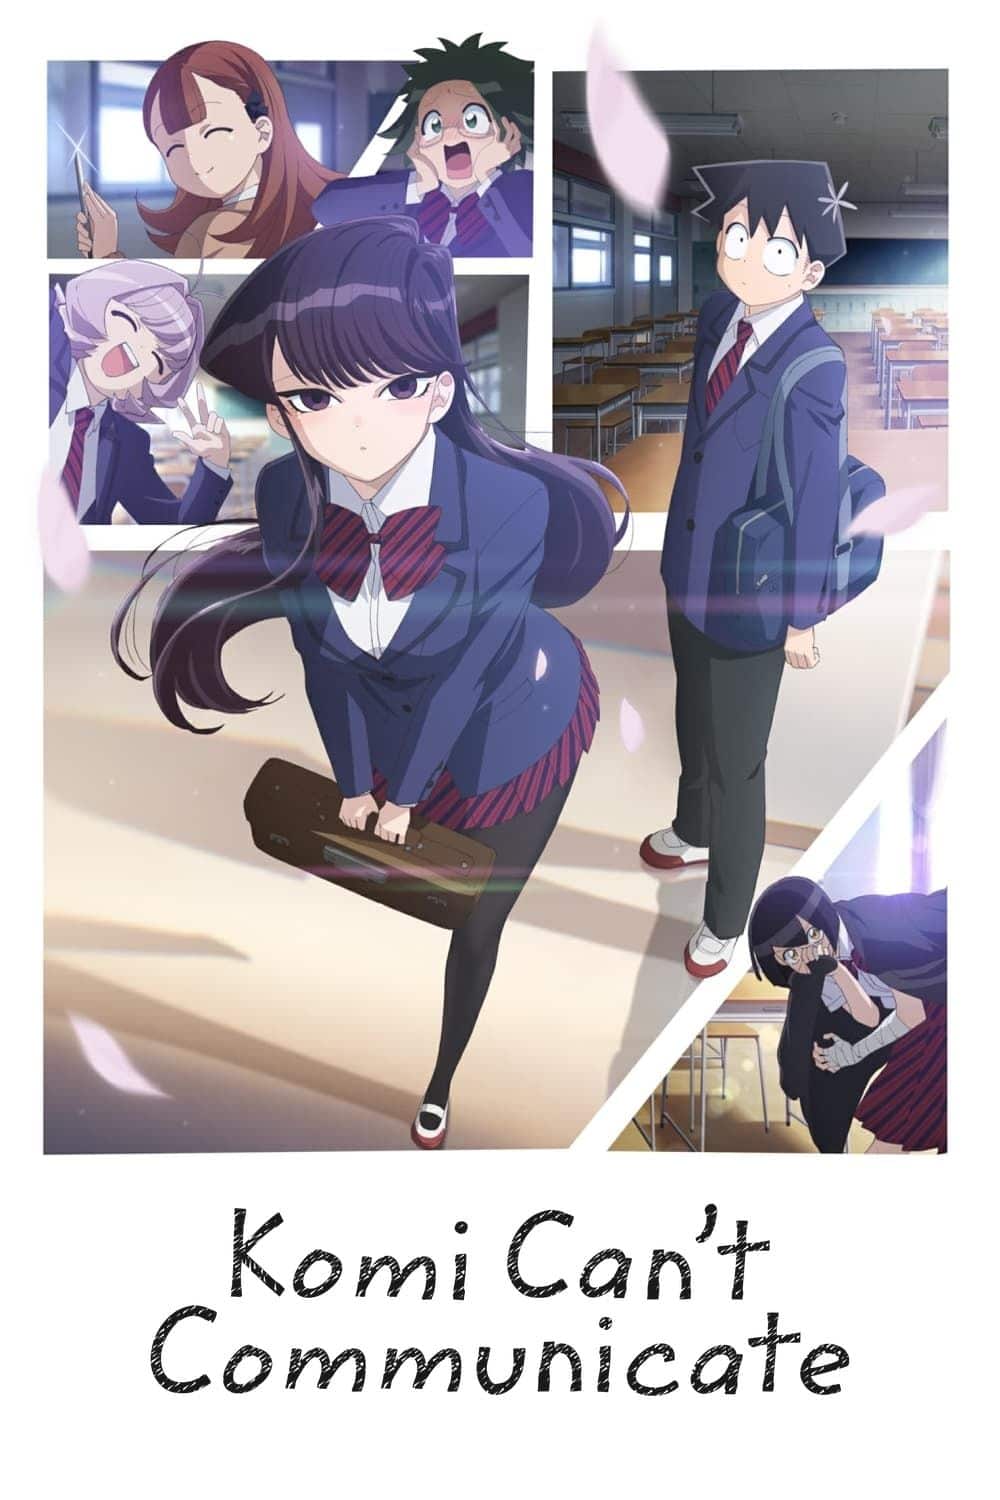 Komi sonriendo frente a paneles que muestran a sus amigos de la escuela en la portada del póster del anime Komi Can't Communicate.